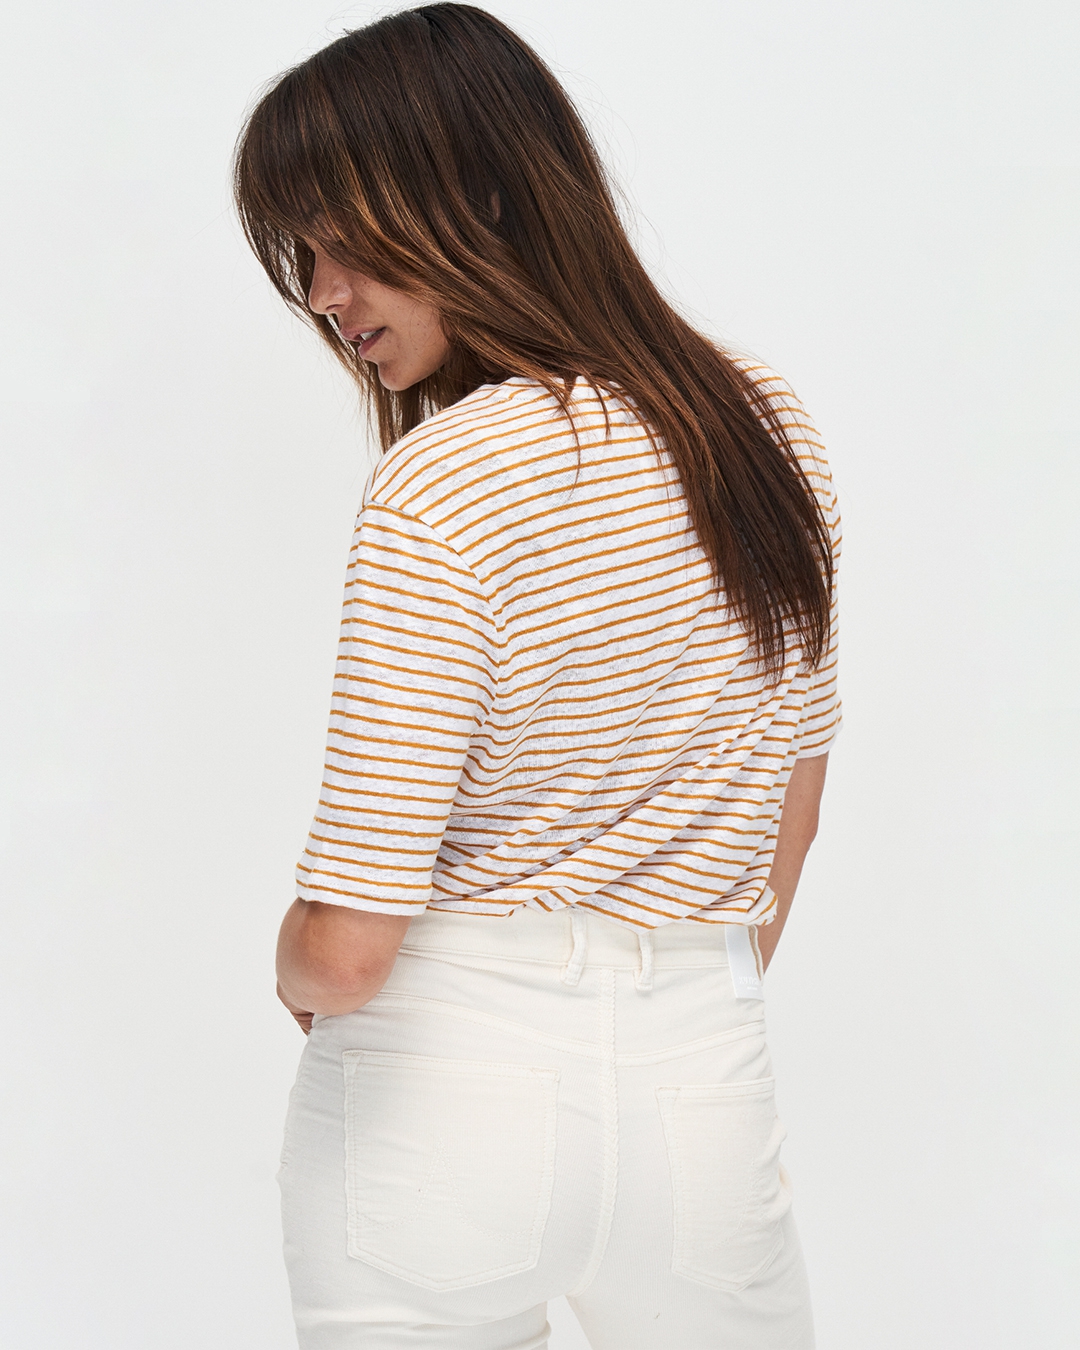 T-Shirt Olivia Striped White-Inca Desert